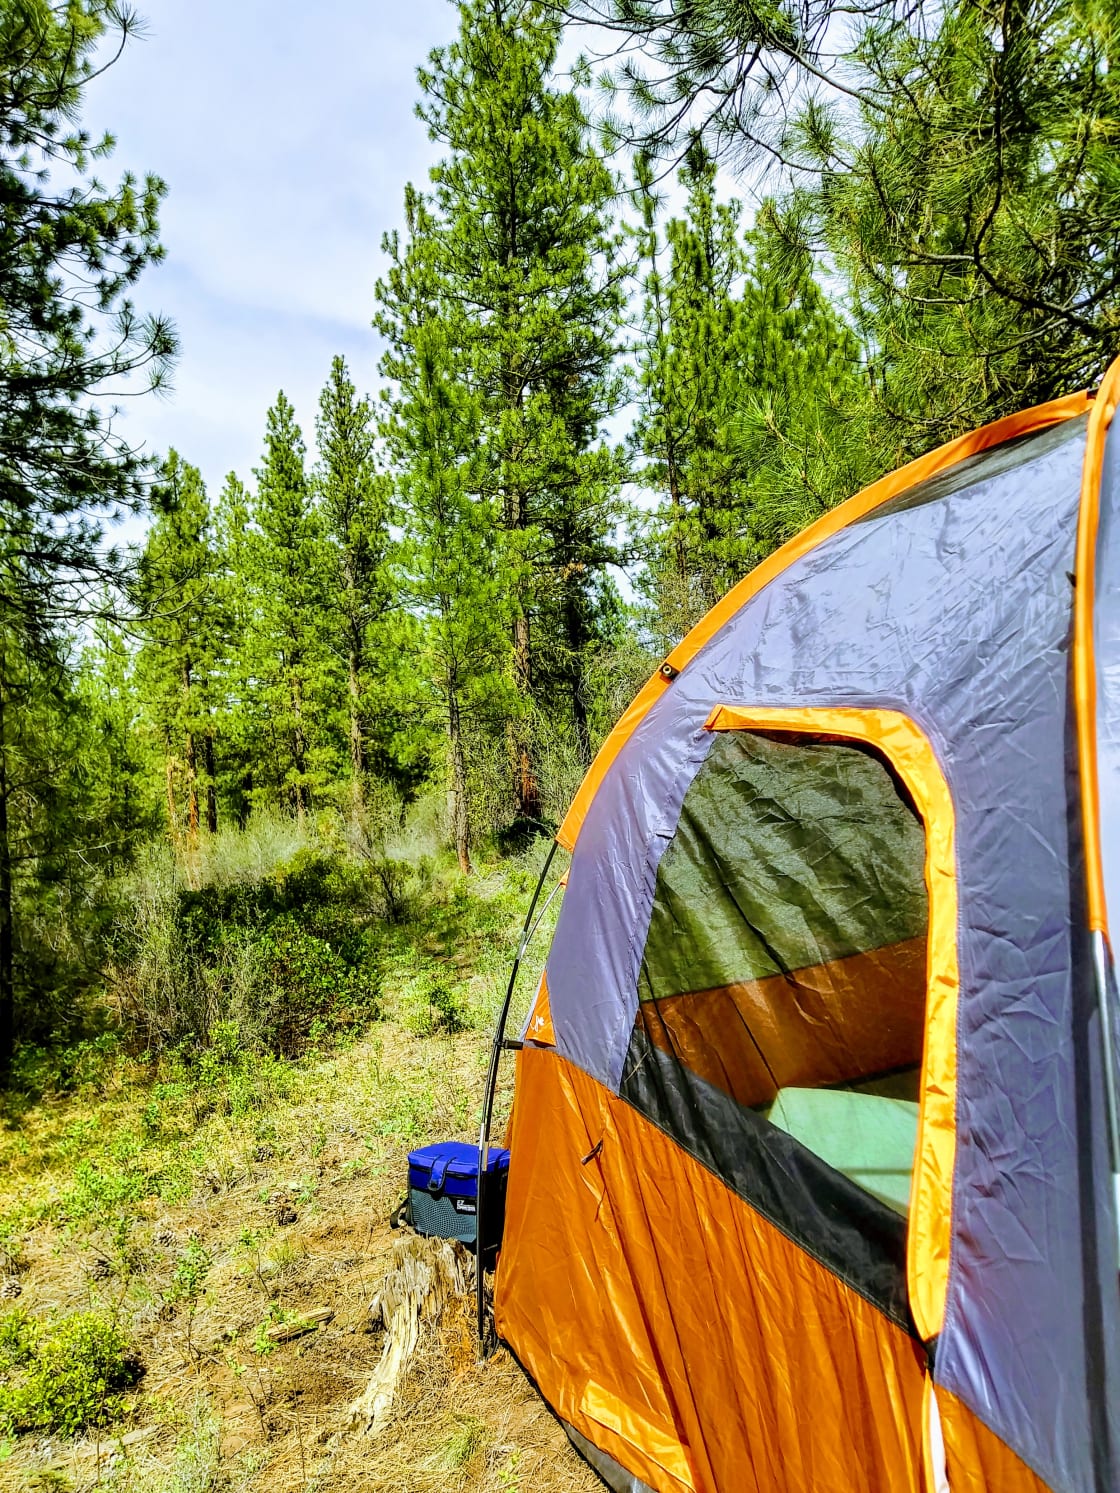 Forest Camp, peaceful splendor